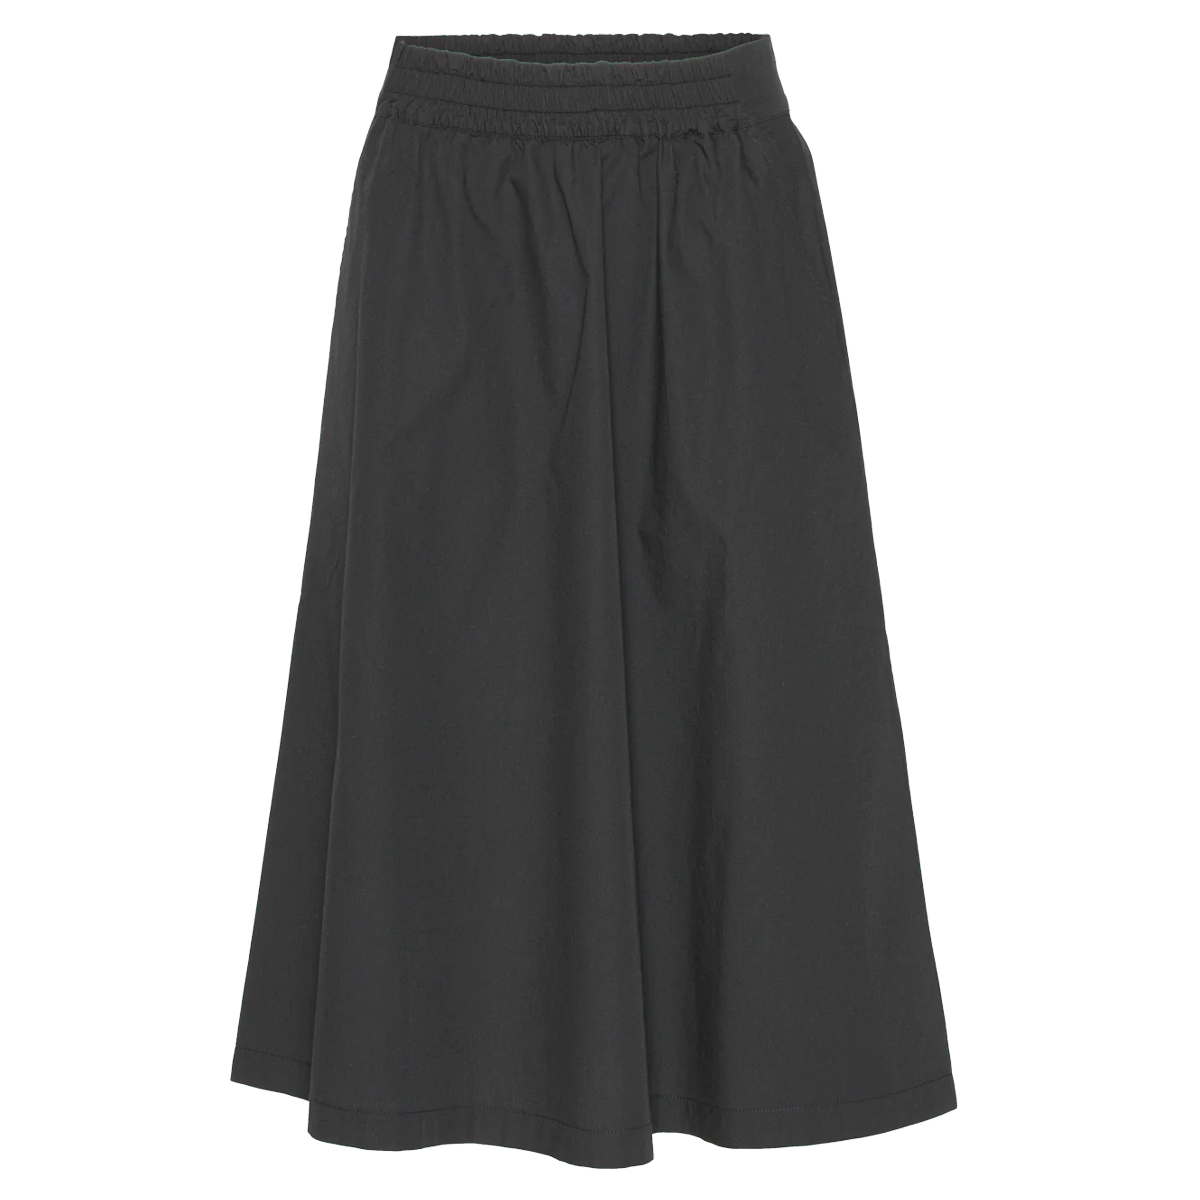 Basic Apparel - Tilde Skirt - Black